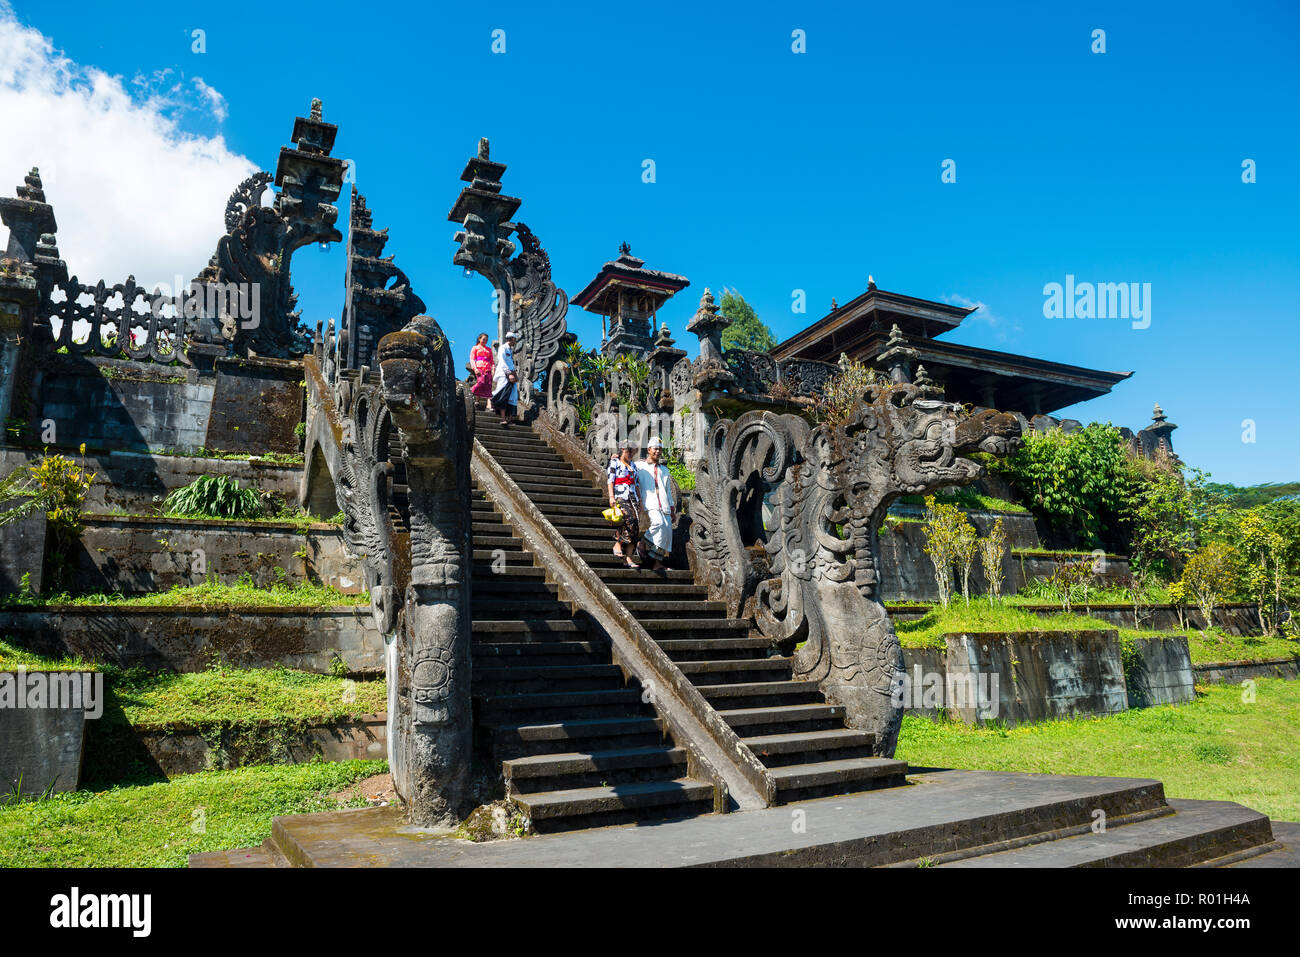 Balinesische Gläubigen gehen Sie die Treppe, der Mutter Tempel, Besakih Tempel Pura Besakih Penetaran Agung, Bali Hinduismus, Banjar Besakih Stockfoto